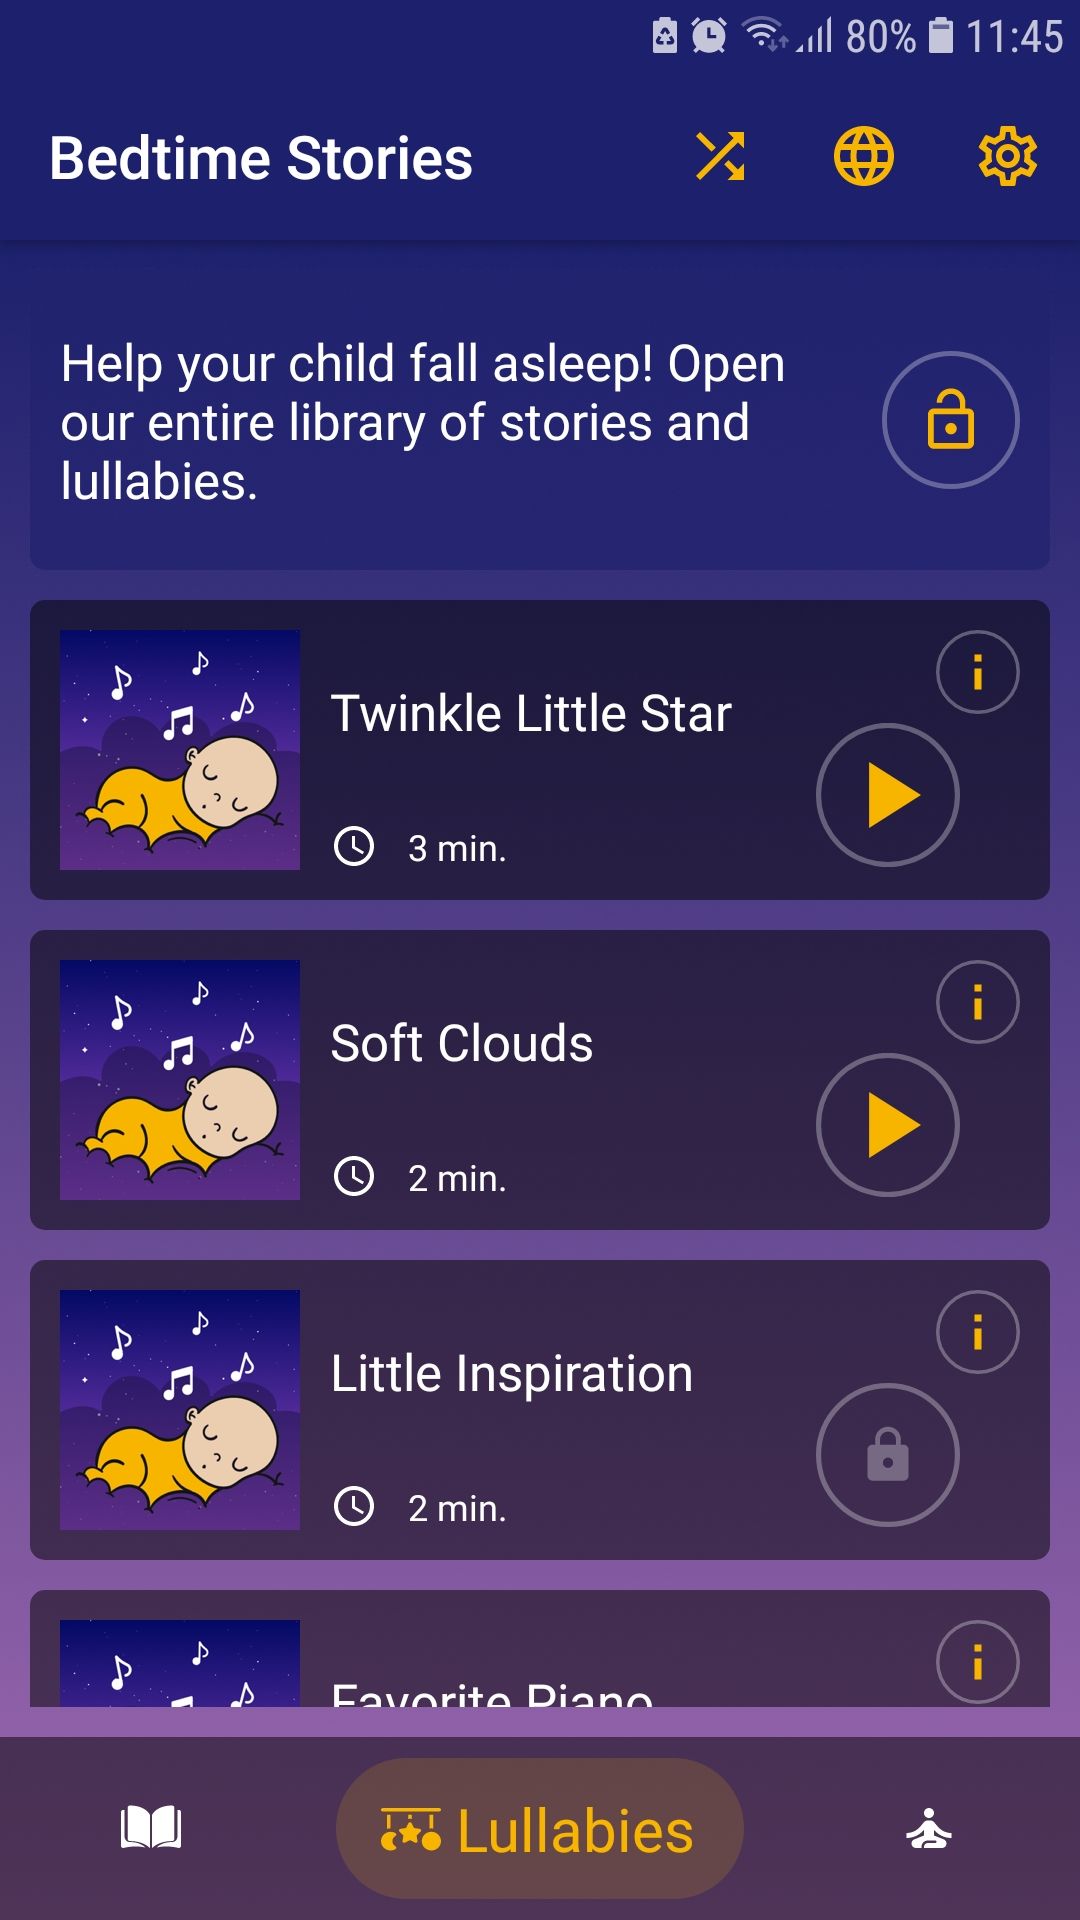 Bedtime Stories mobile kids sleep app lullabies